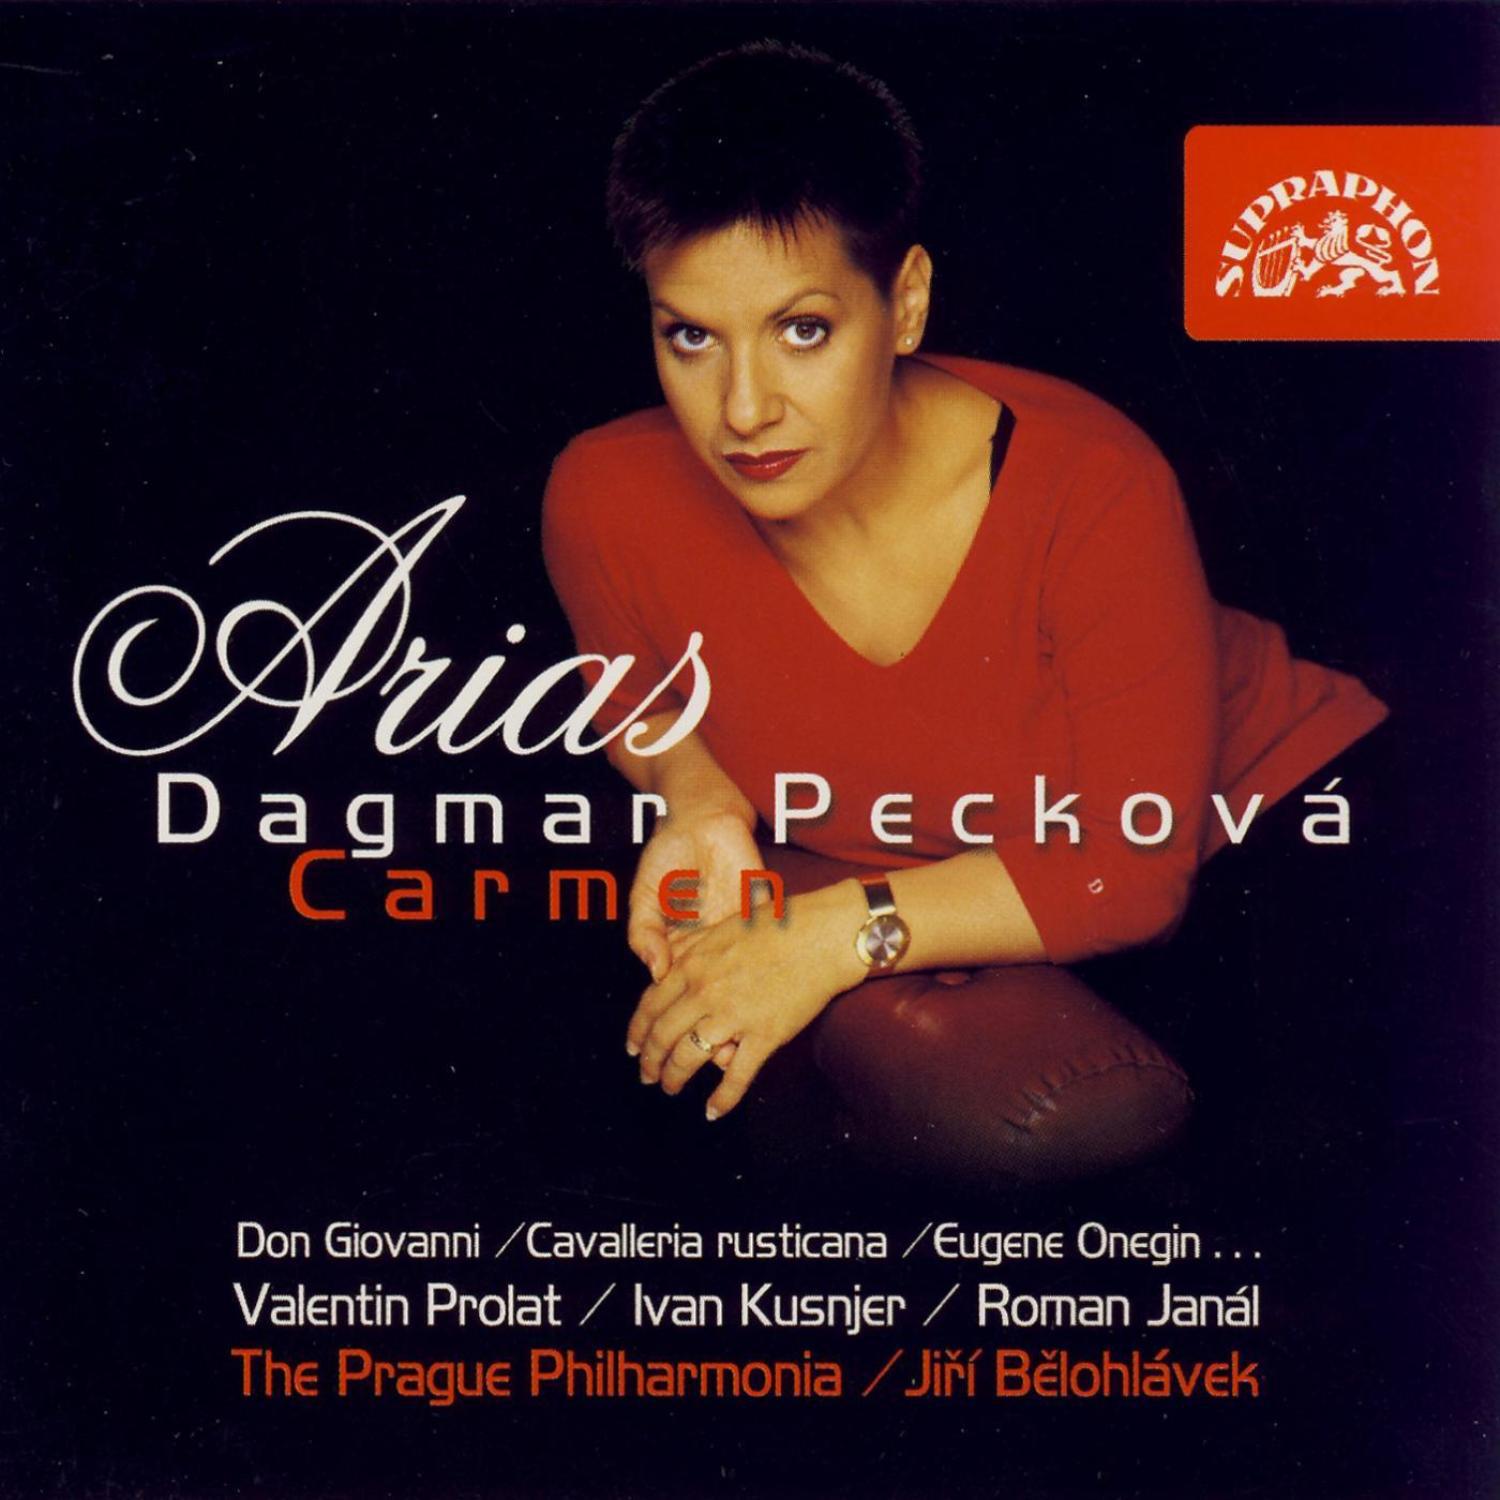 Dagmar Pecková - Carmen. Opera in 4 Acts: Act 2: Le fleur que tu m'avais jetée